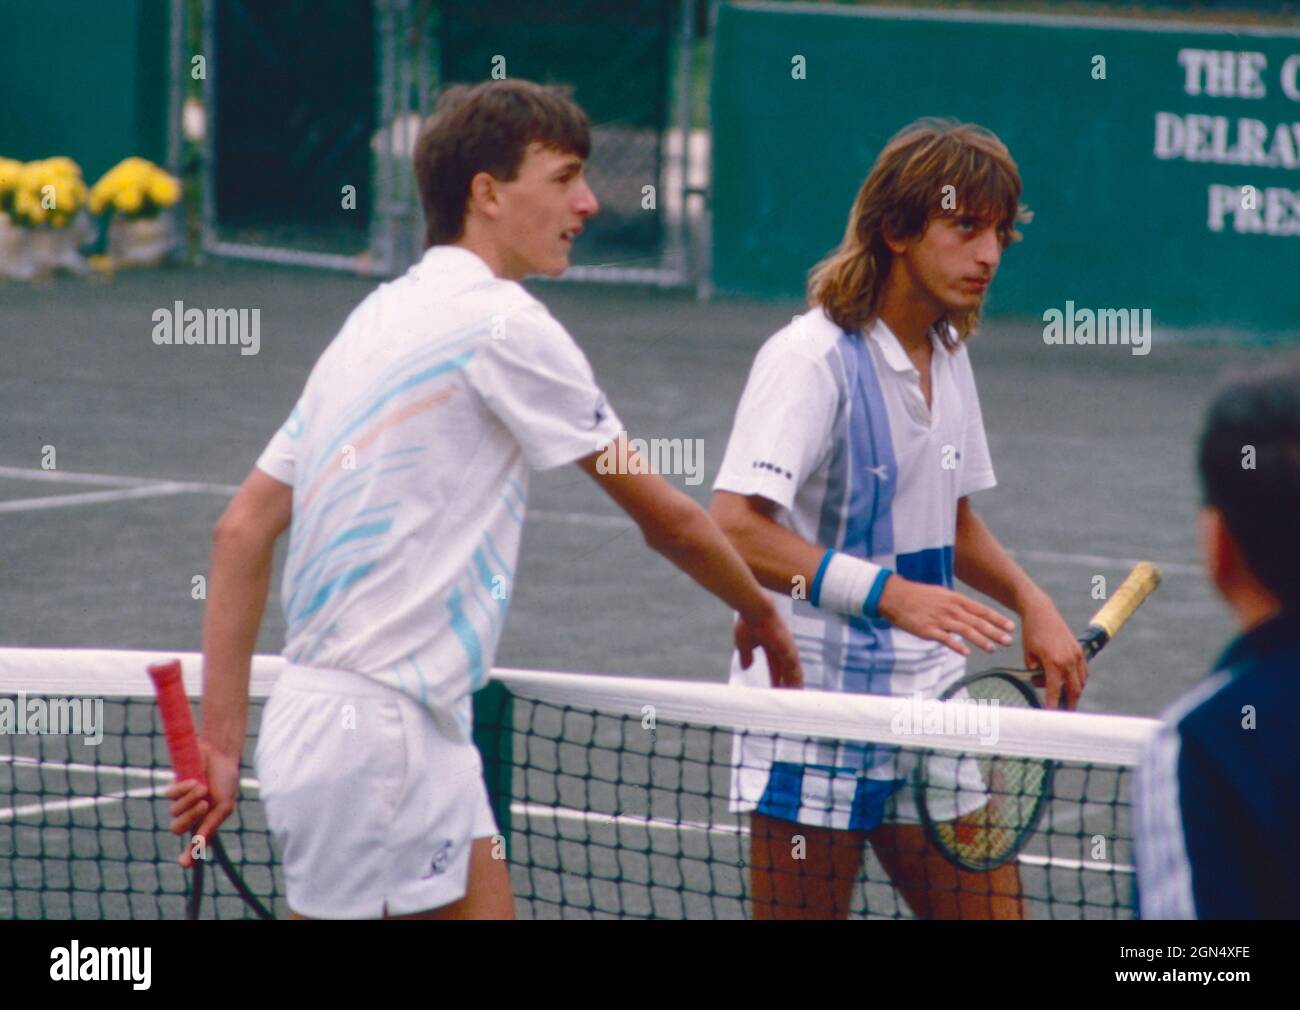 Joueur péruvien de tennis Alejandro Aramburu, années 1990 Banque D'Images